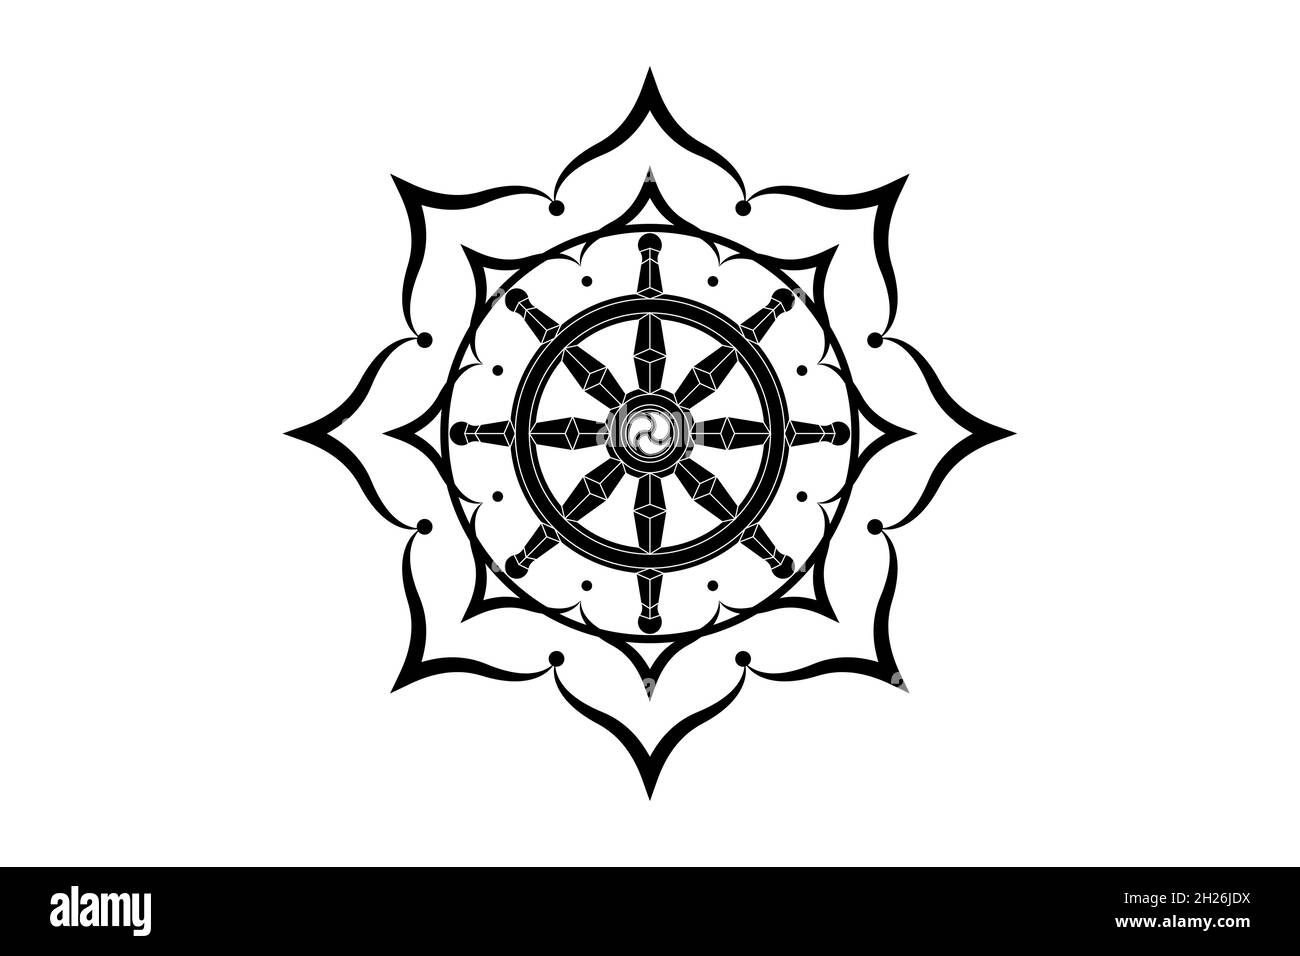 Dharma Wheel | Dharma wheel, Buddhist symbol tattoos, Dharma wheel tattoo